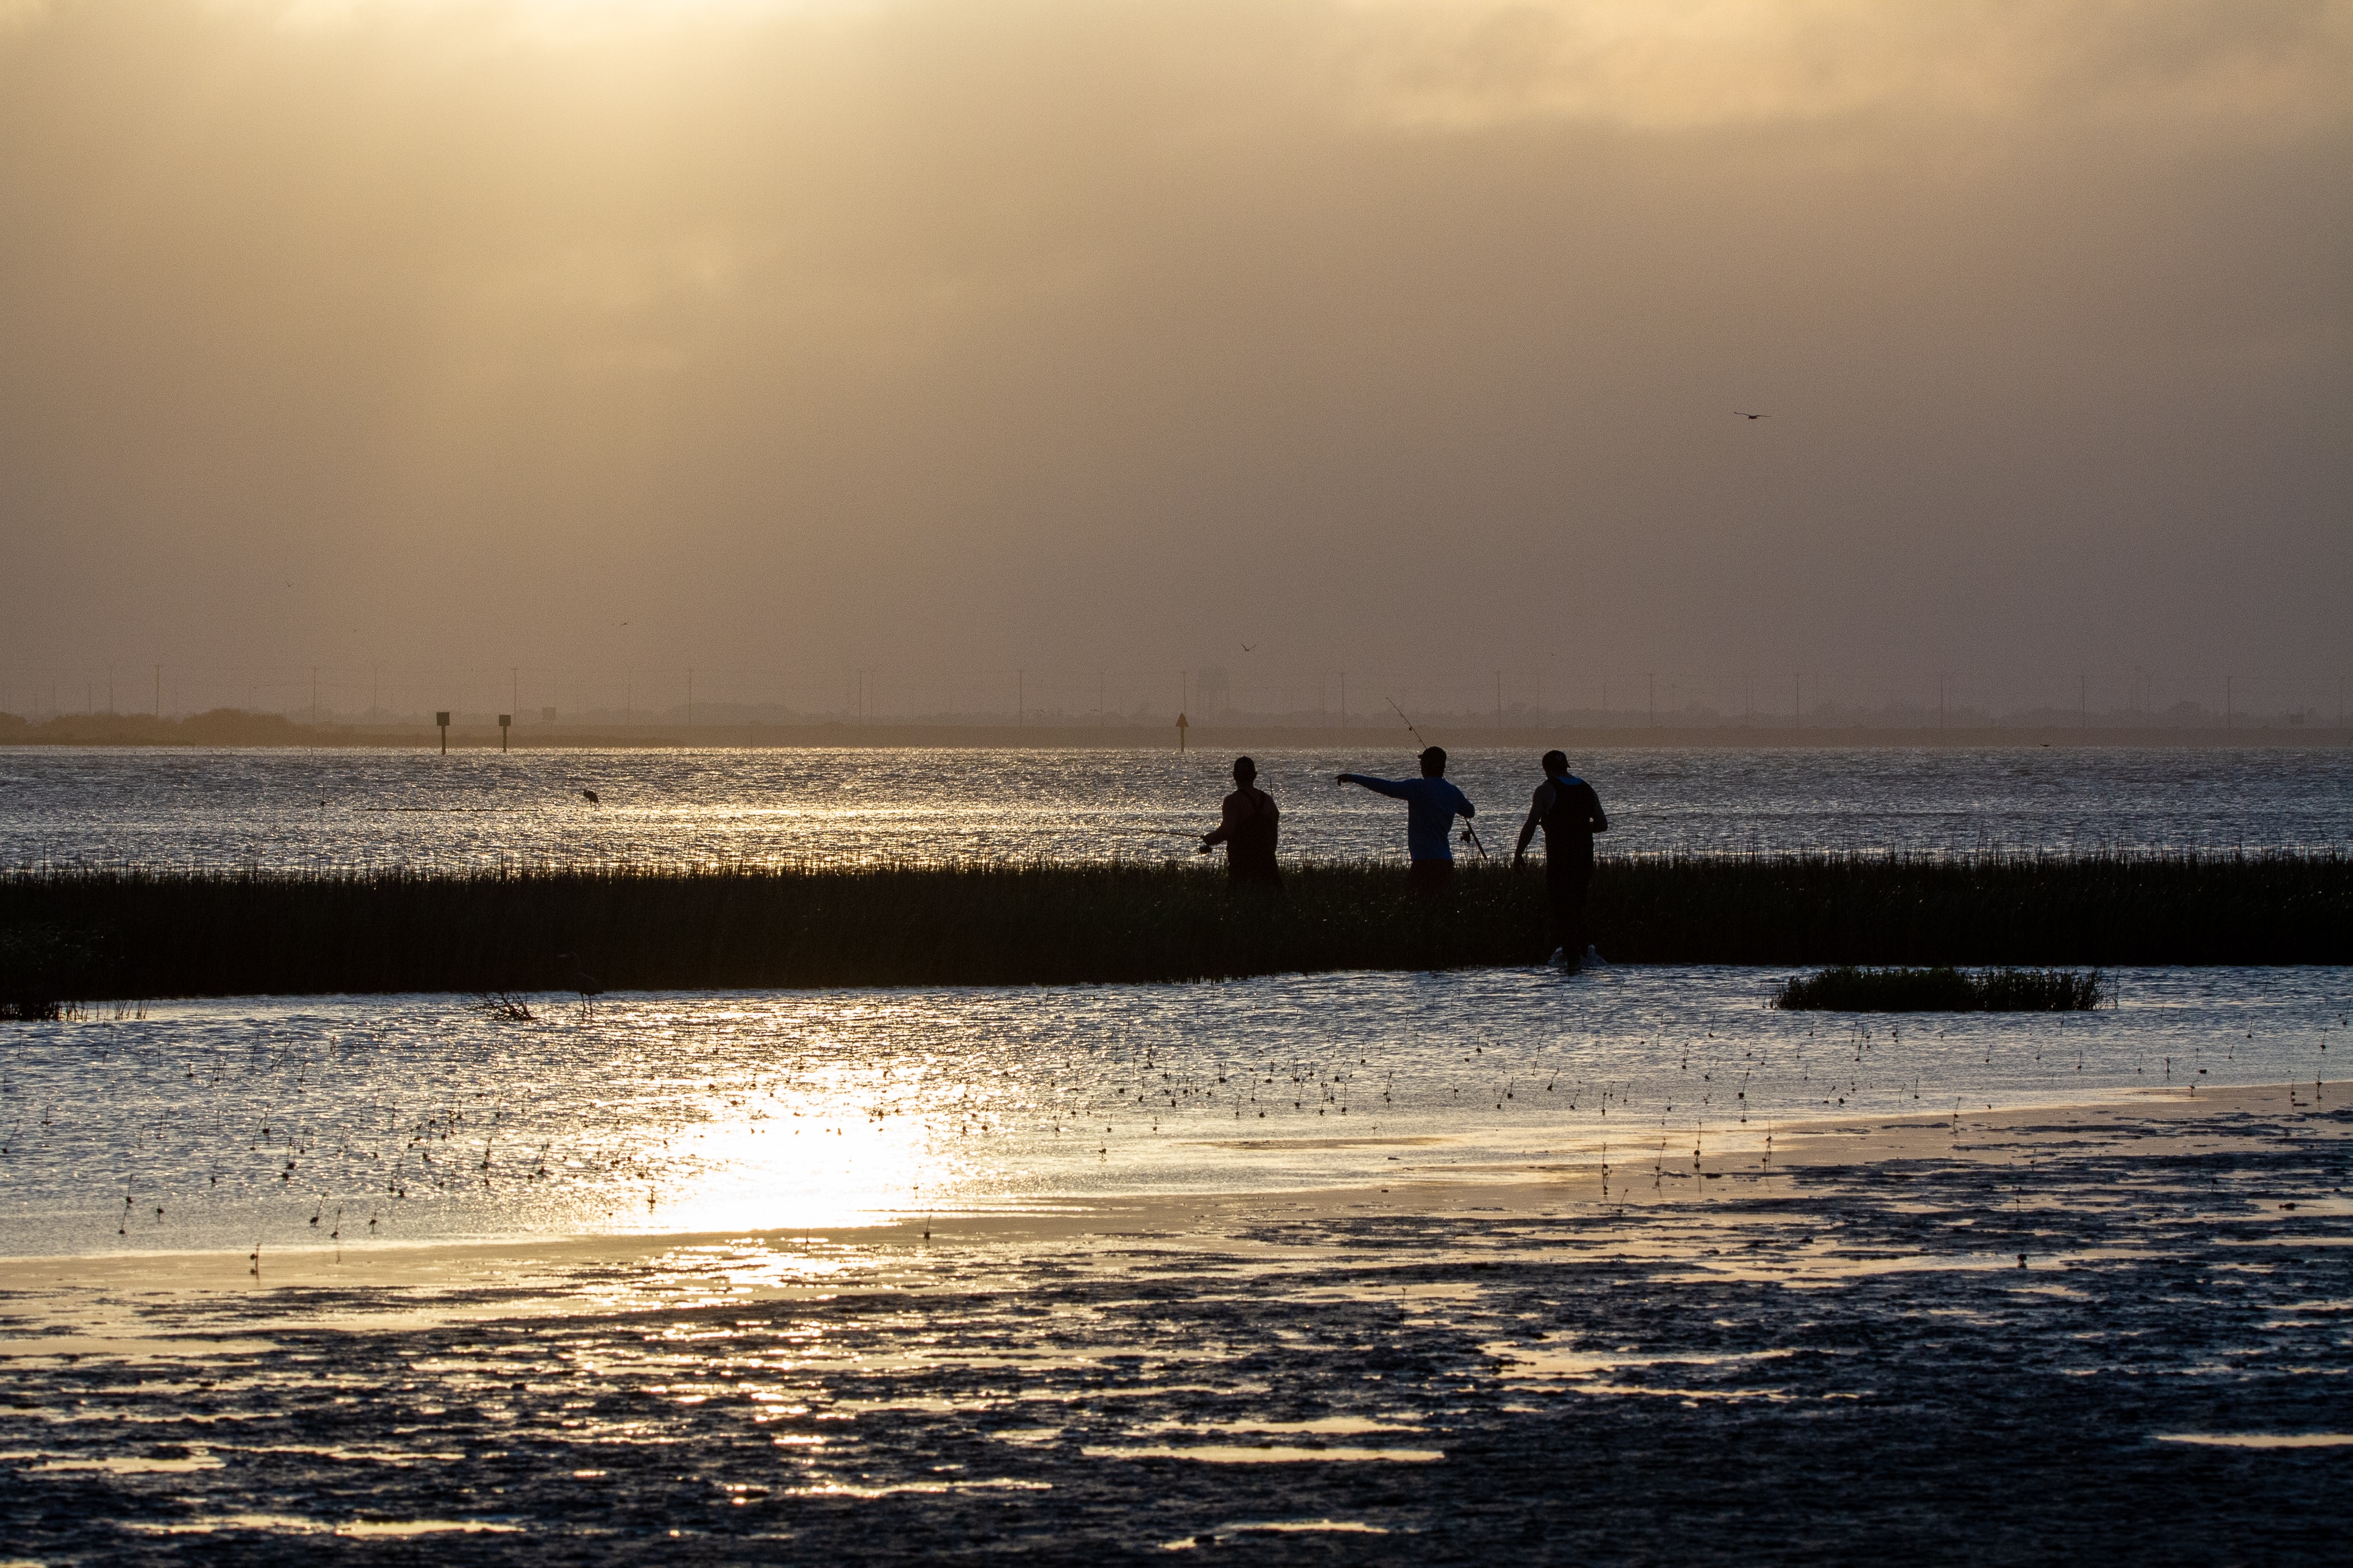 Fishermen on the horizon on the seashore